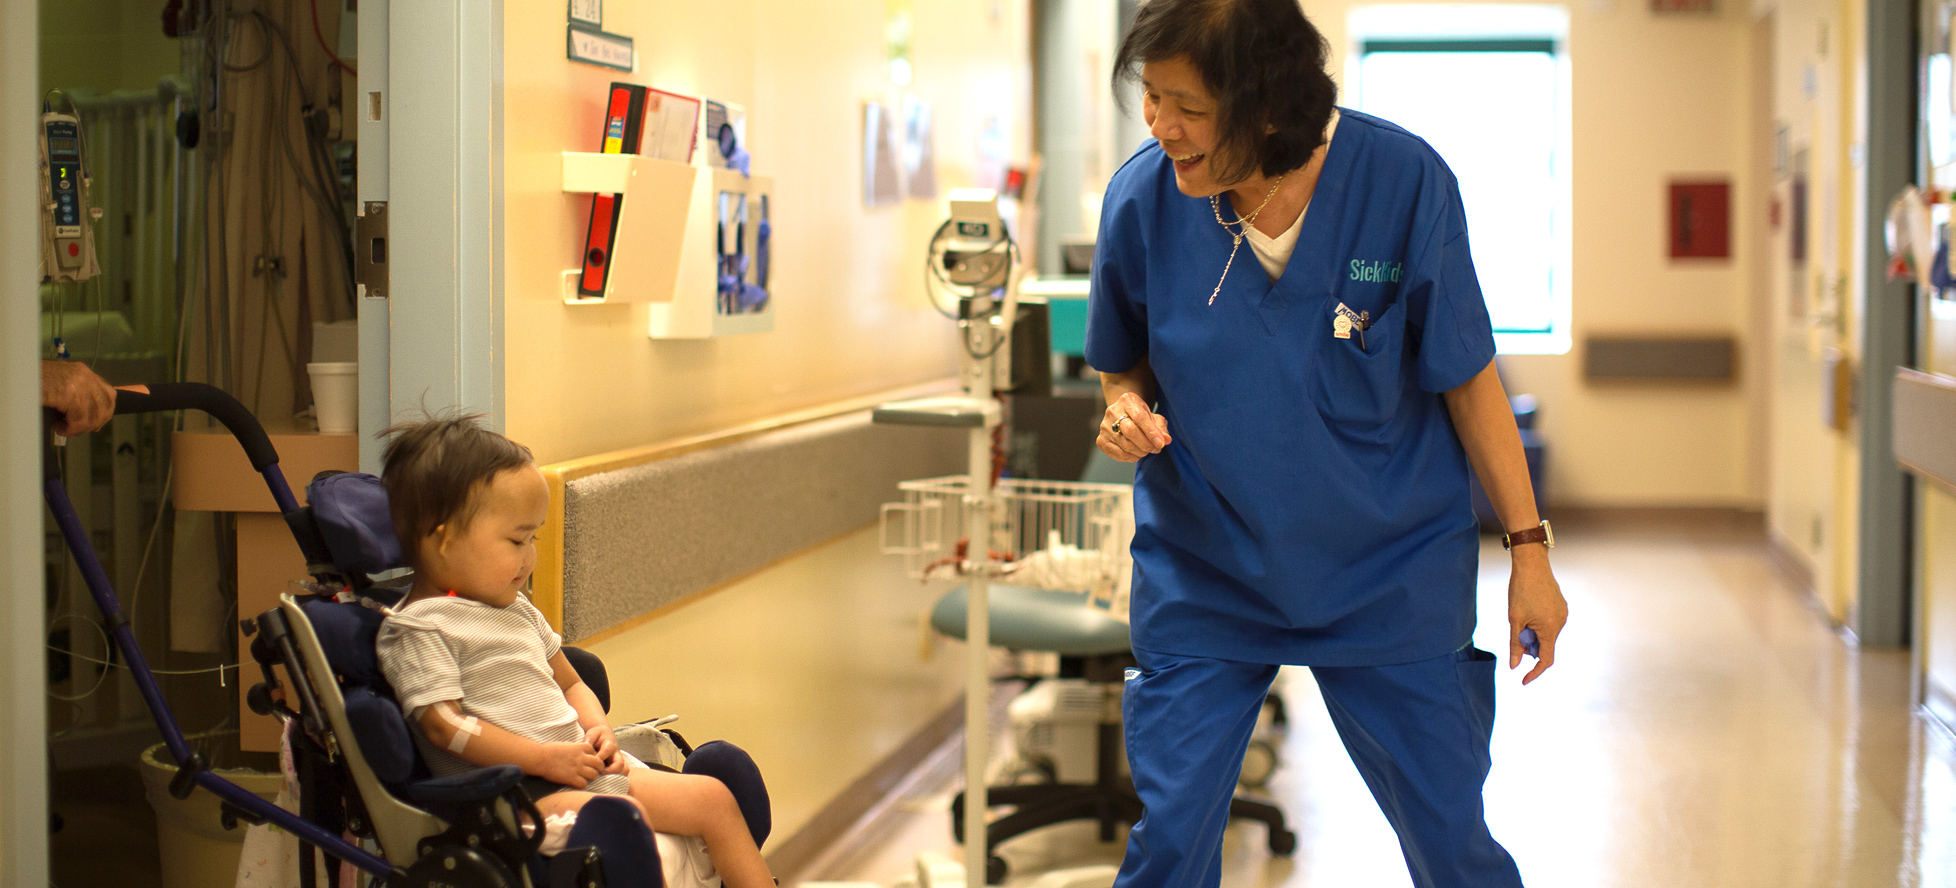 SickKids nurse with little girl in wheelchair